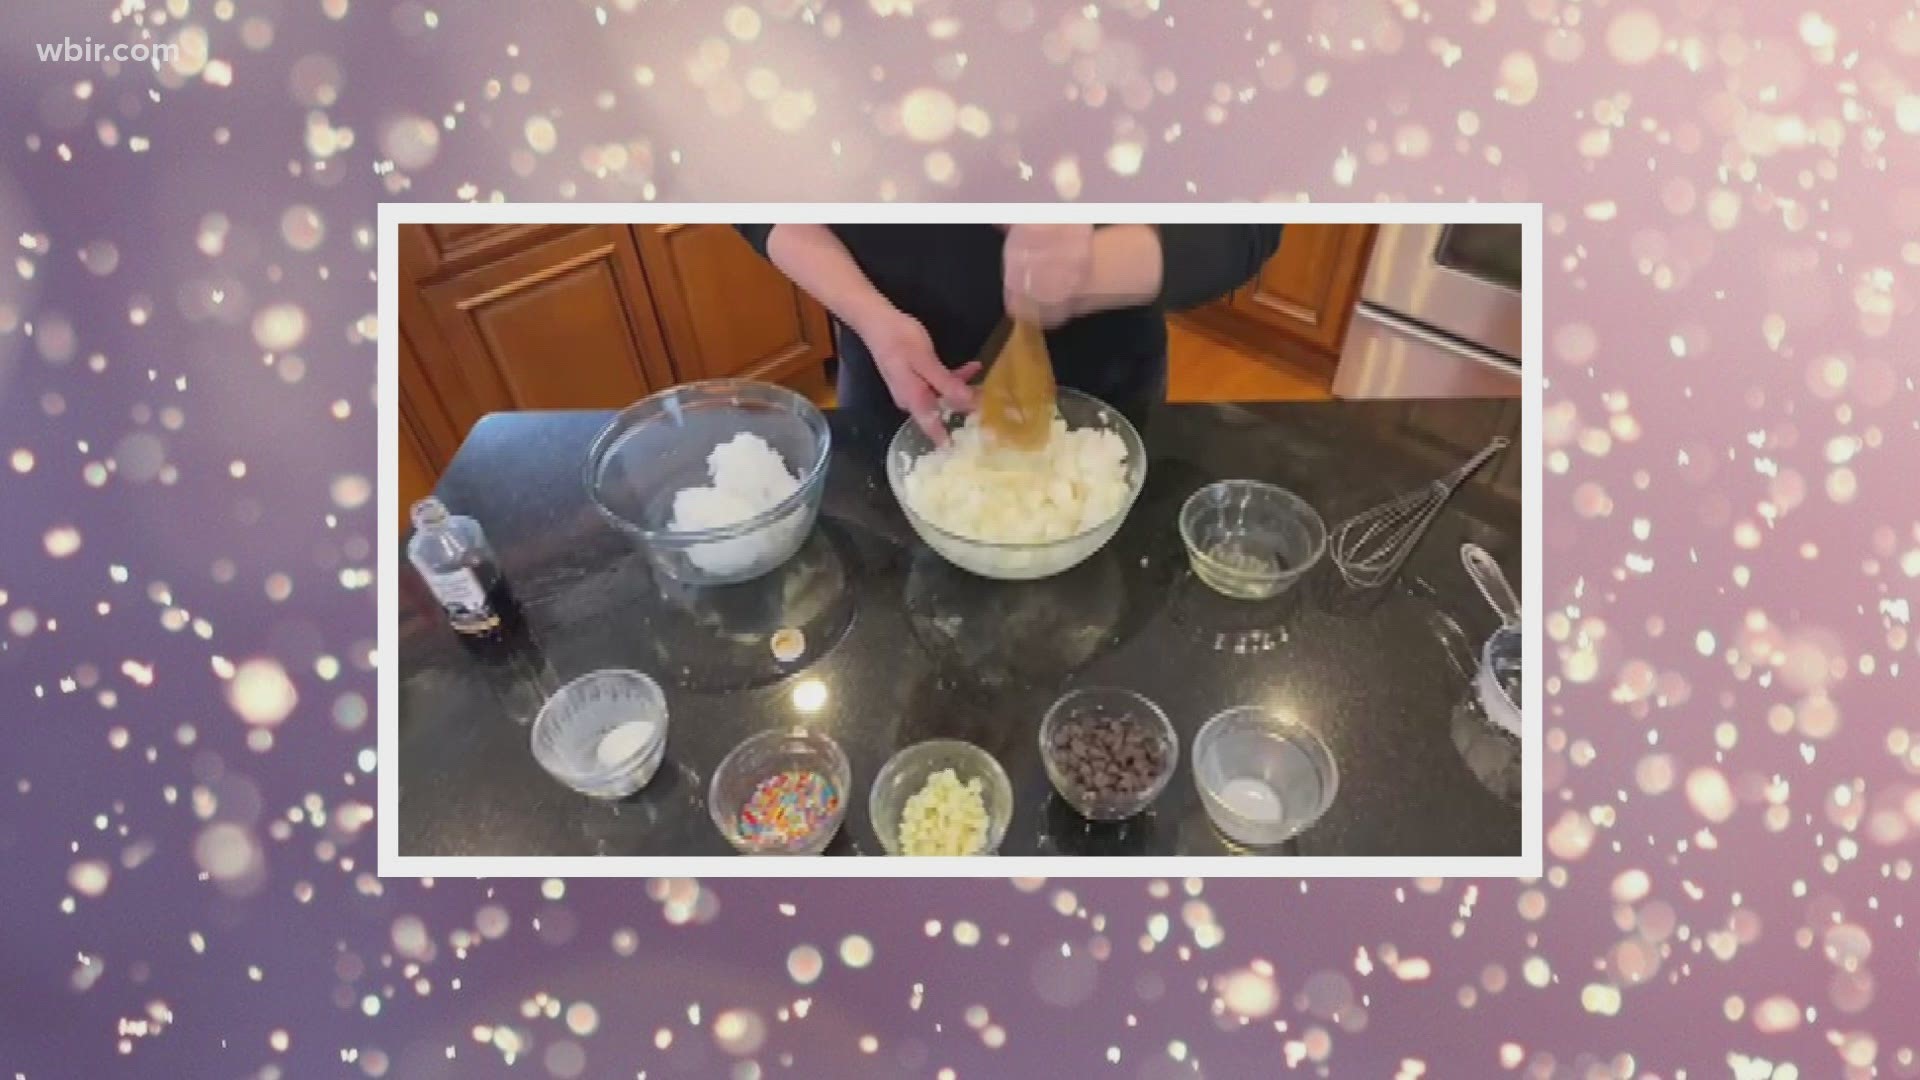 Shona House with Faith Baked Cakes shows us how to make snow cream, follow Faith Baked Cakes on Facebook or faithbakedcakes.com. Jan. 11, 2021-4pm.